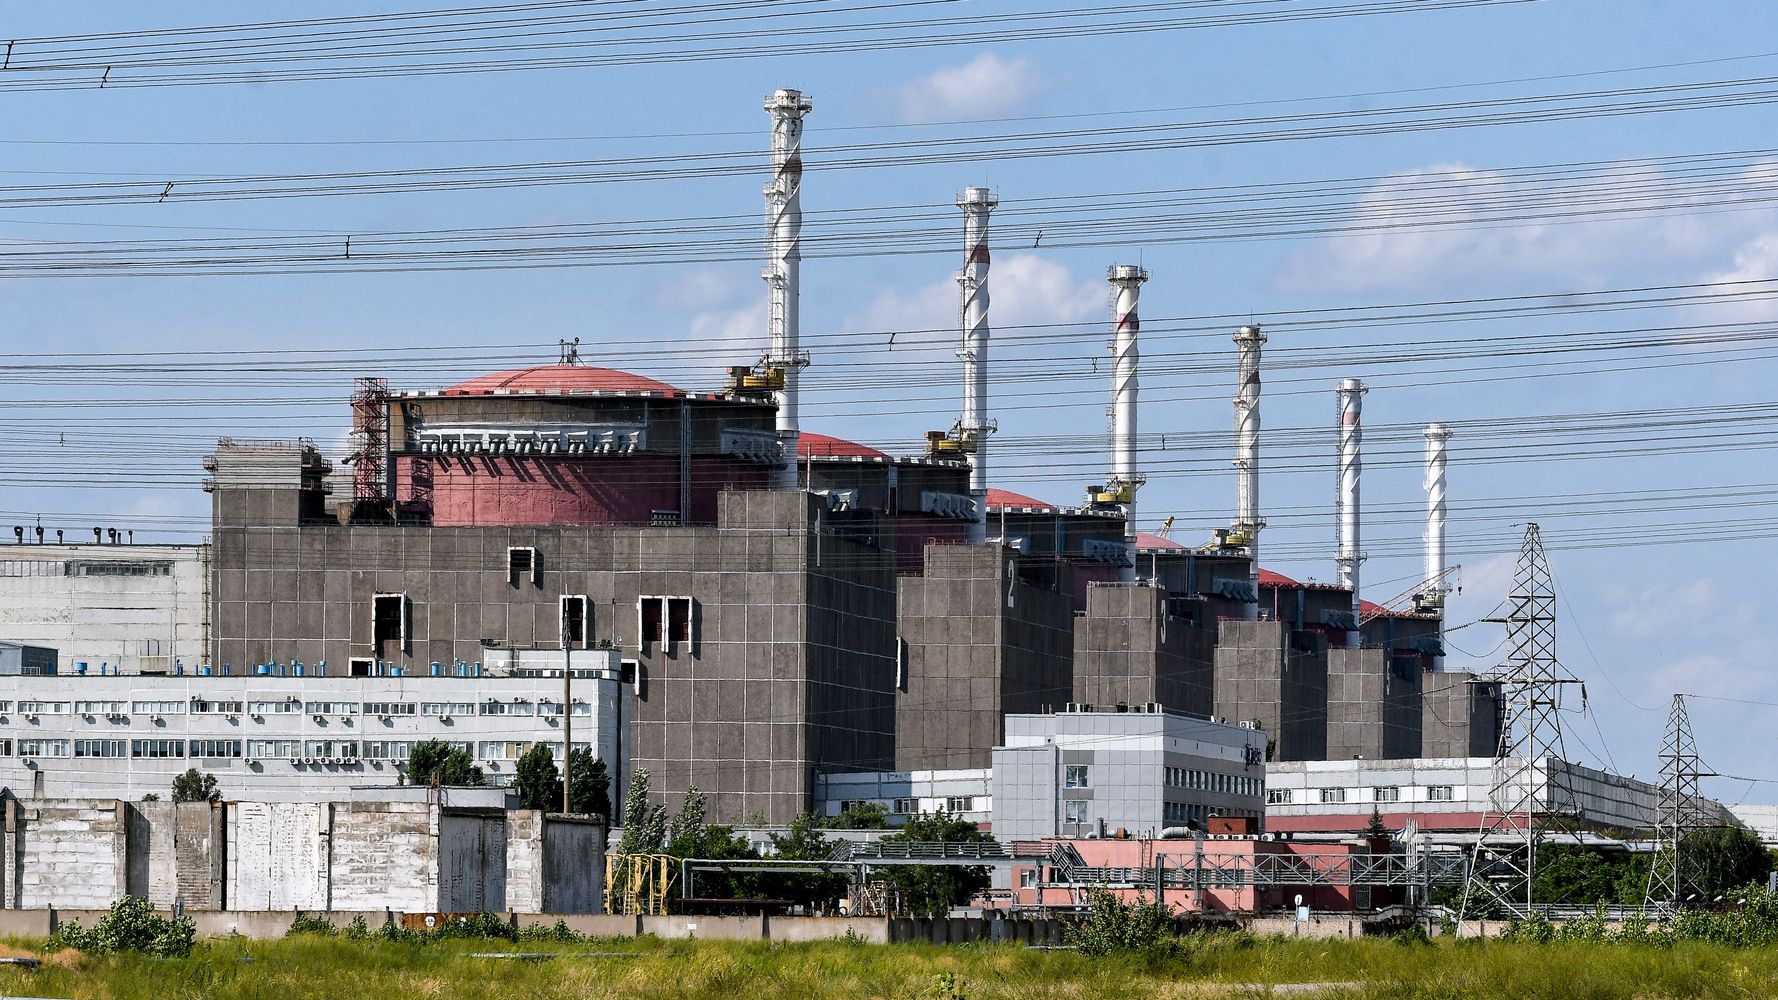 ザポリージャ原発とは？欧州最大級、6つの原子炉が設置【ウクライナ侵攻】